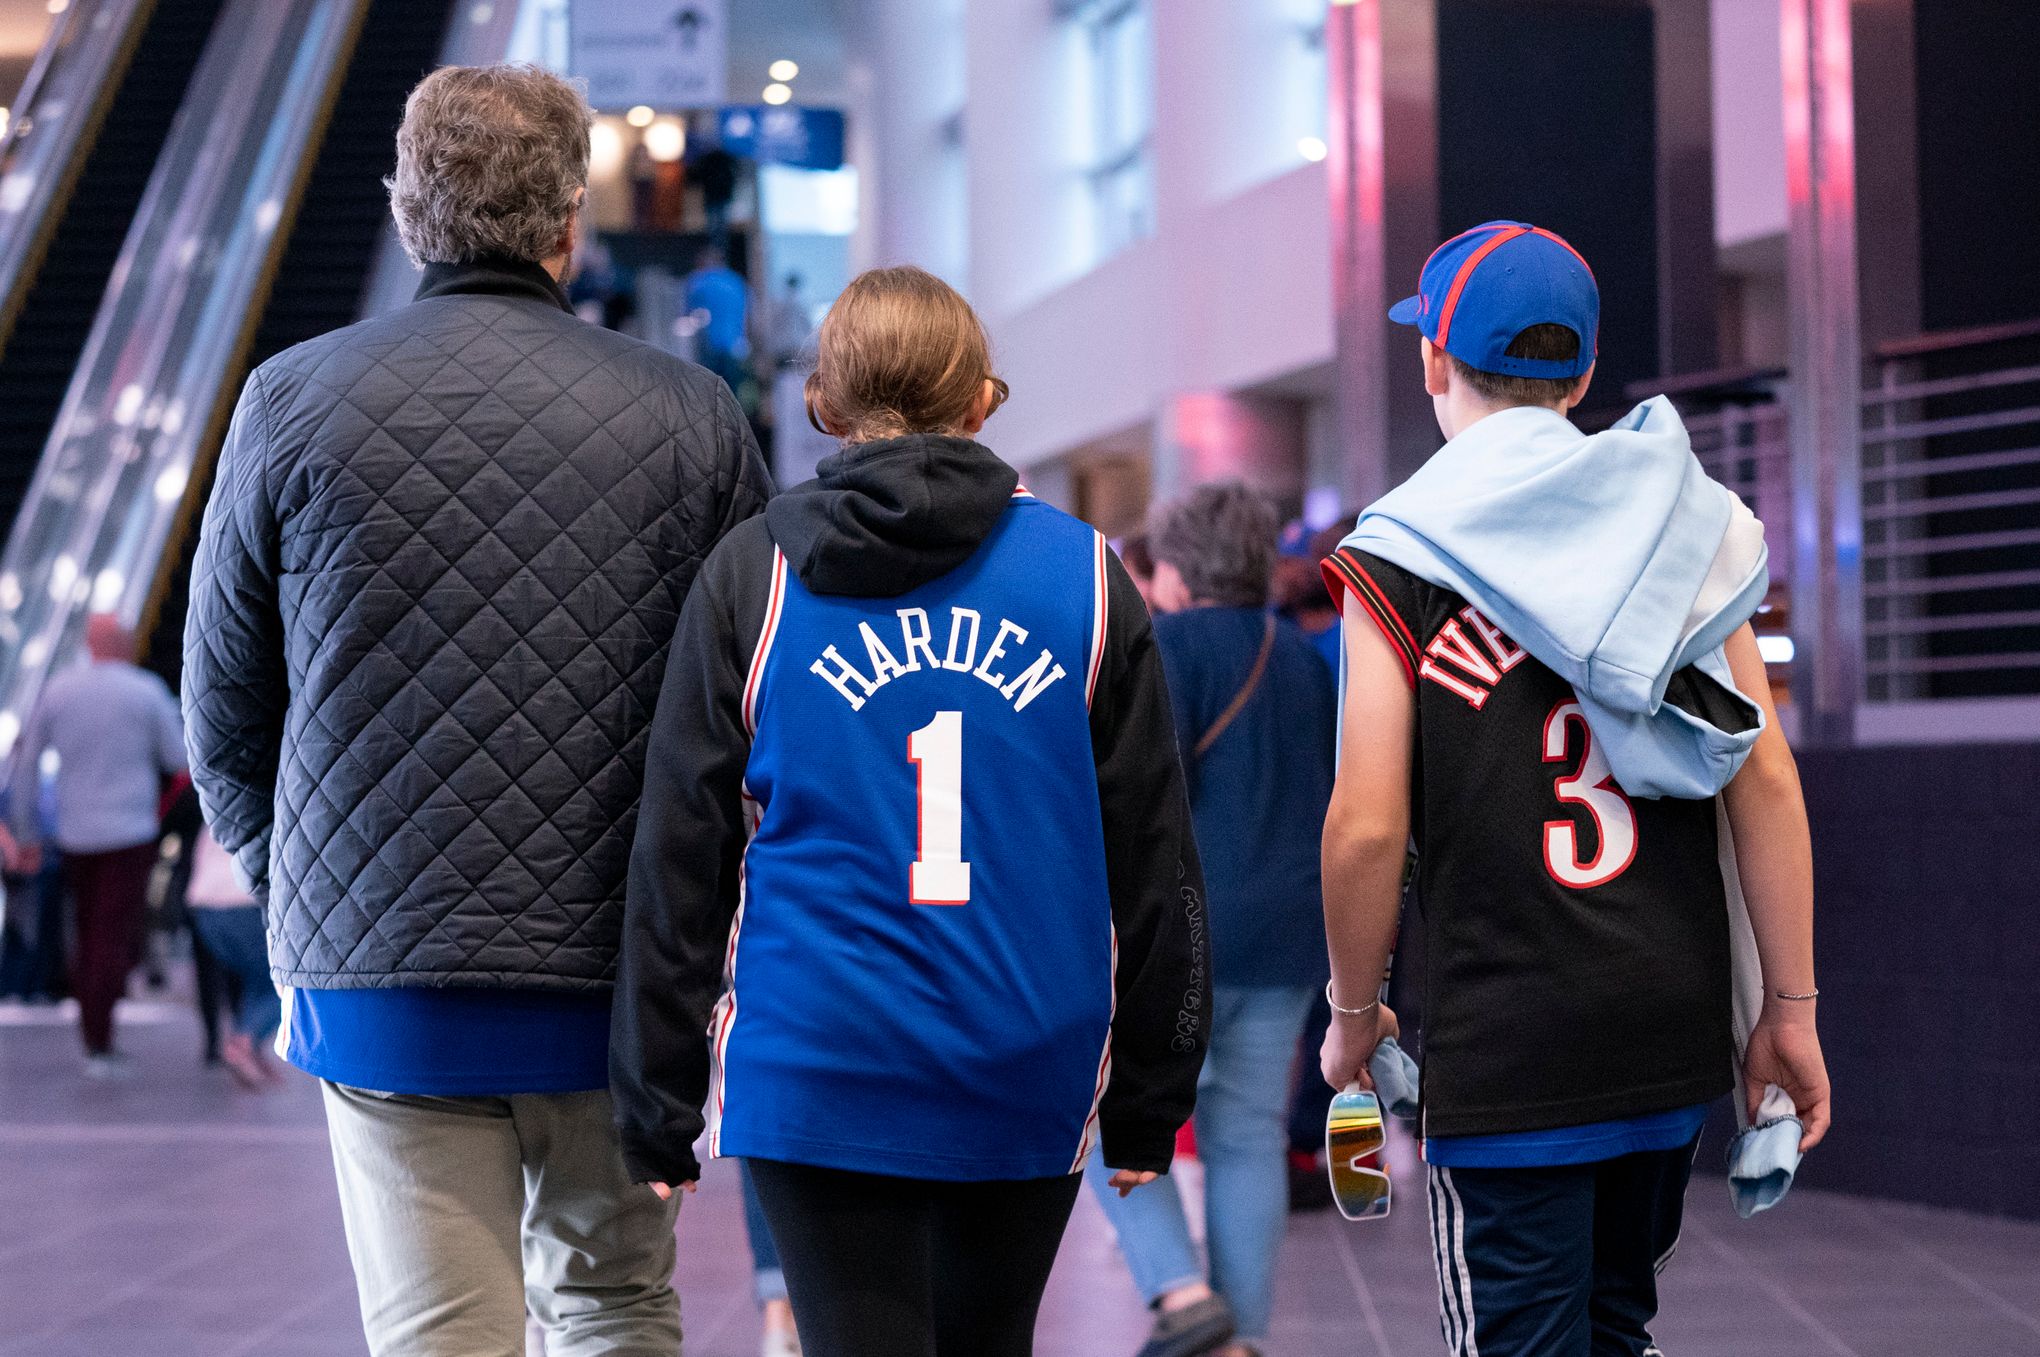 James Harden's jersey, Sixers merchandise top-selling across NBA